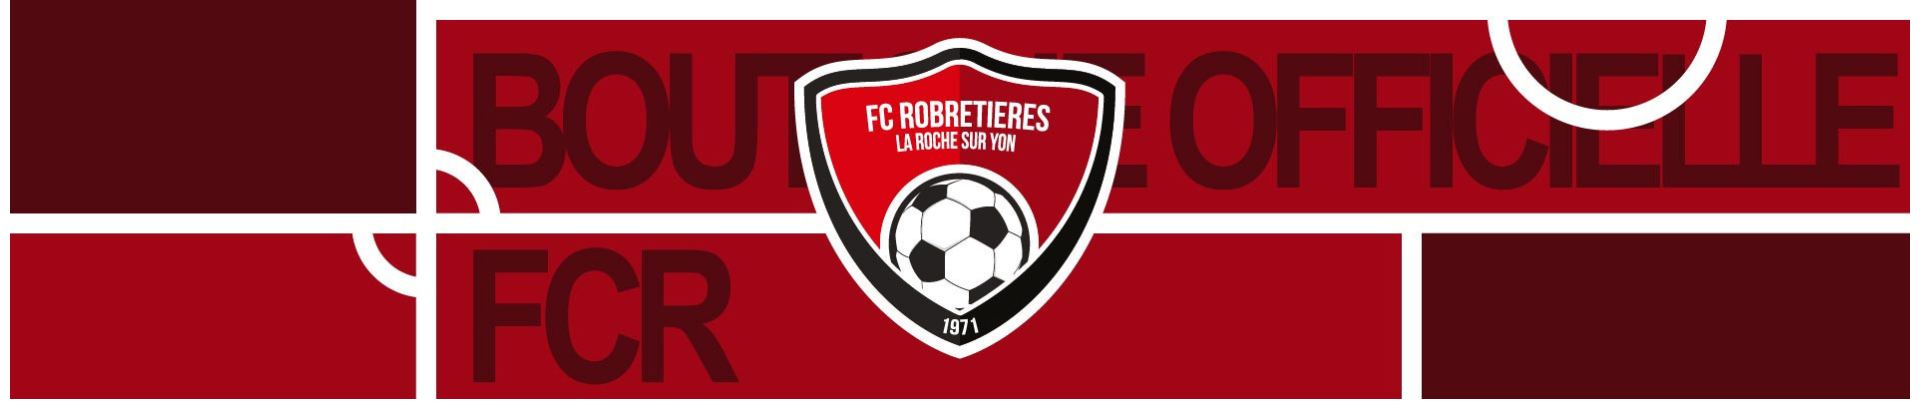 FC Robretières